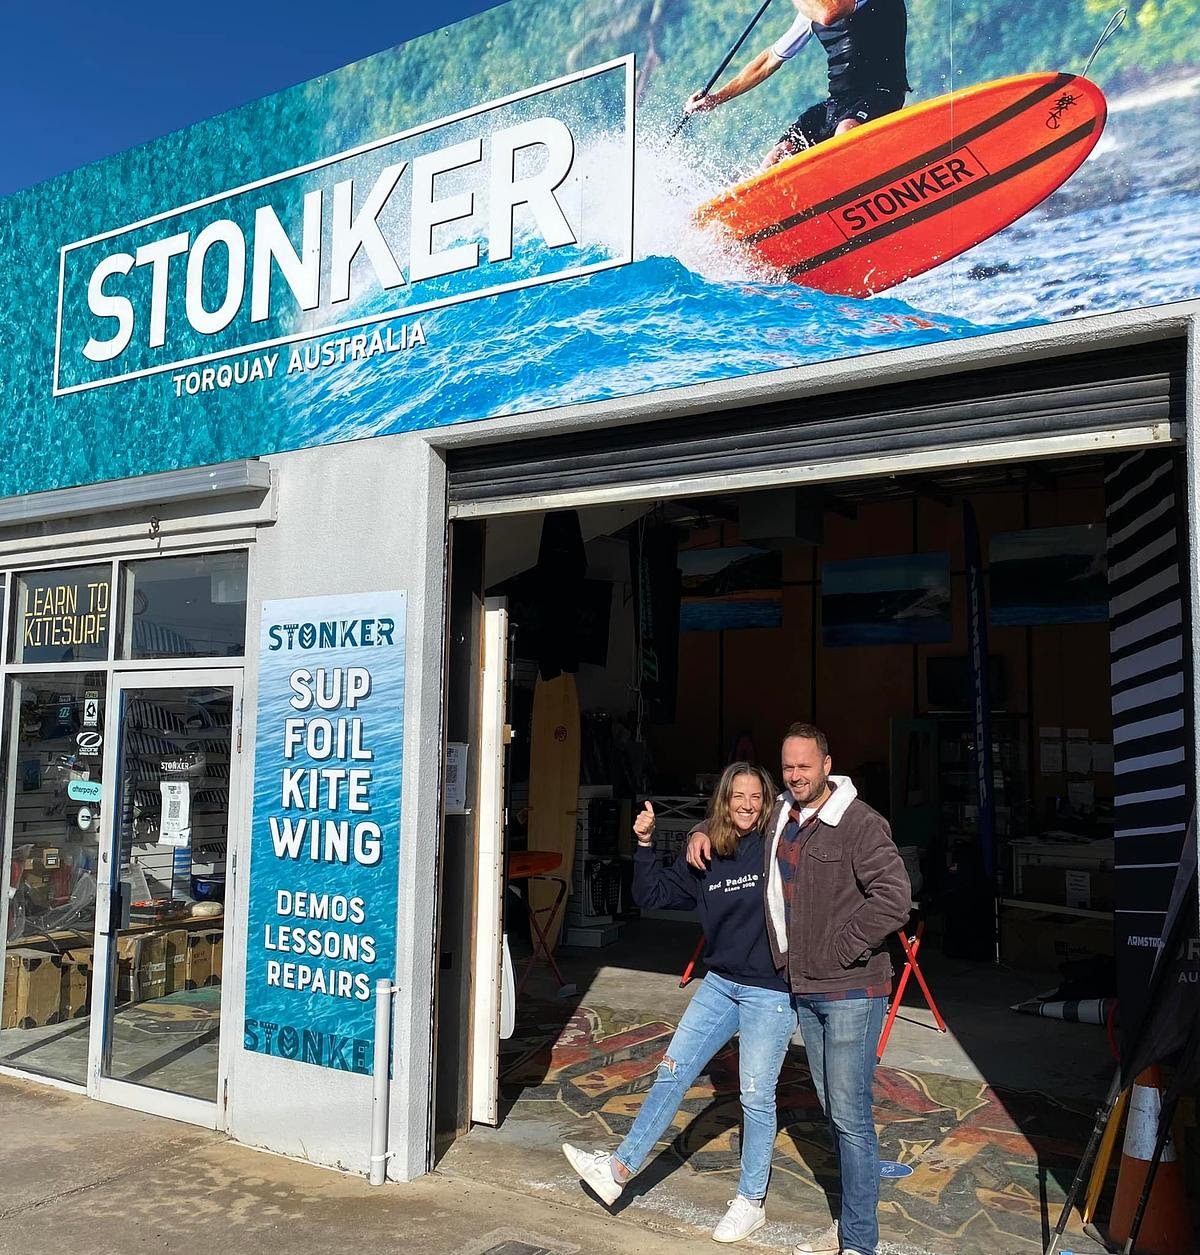 The new owners of Stonker in Torquay - Ben Hucker & Jess Hucker